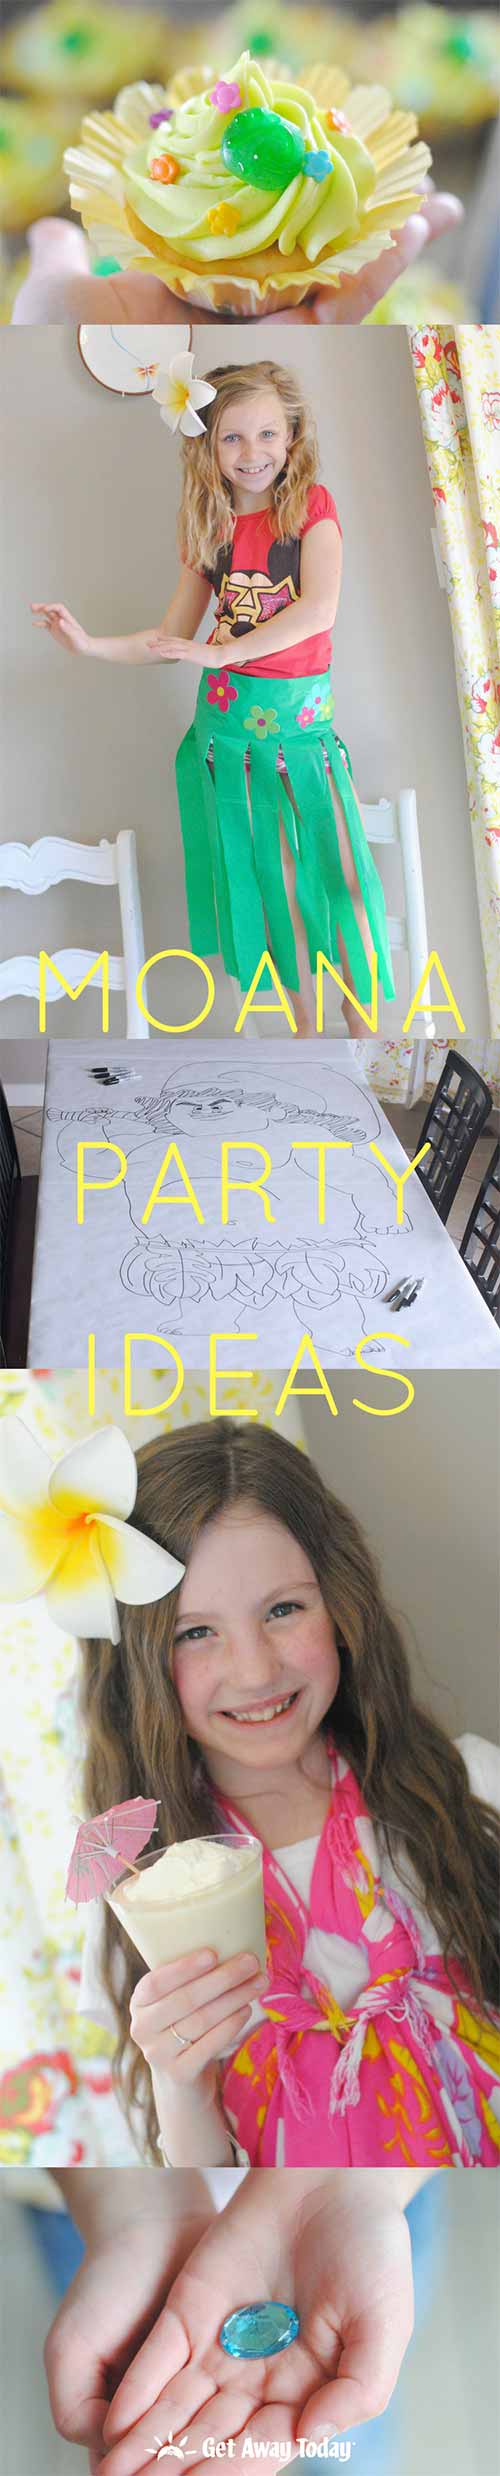 Moana Party Ideas